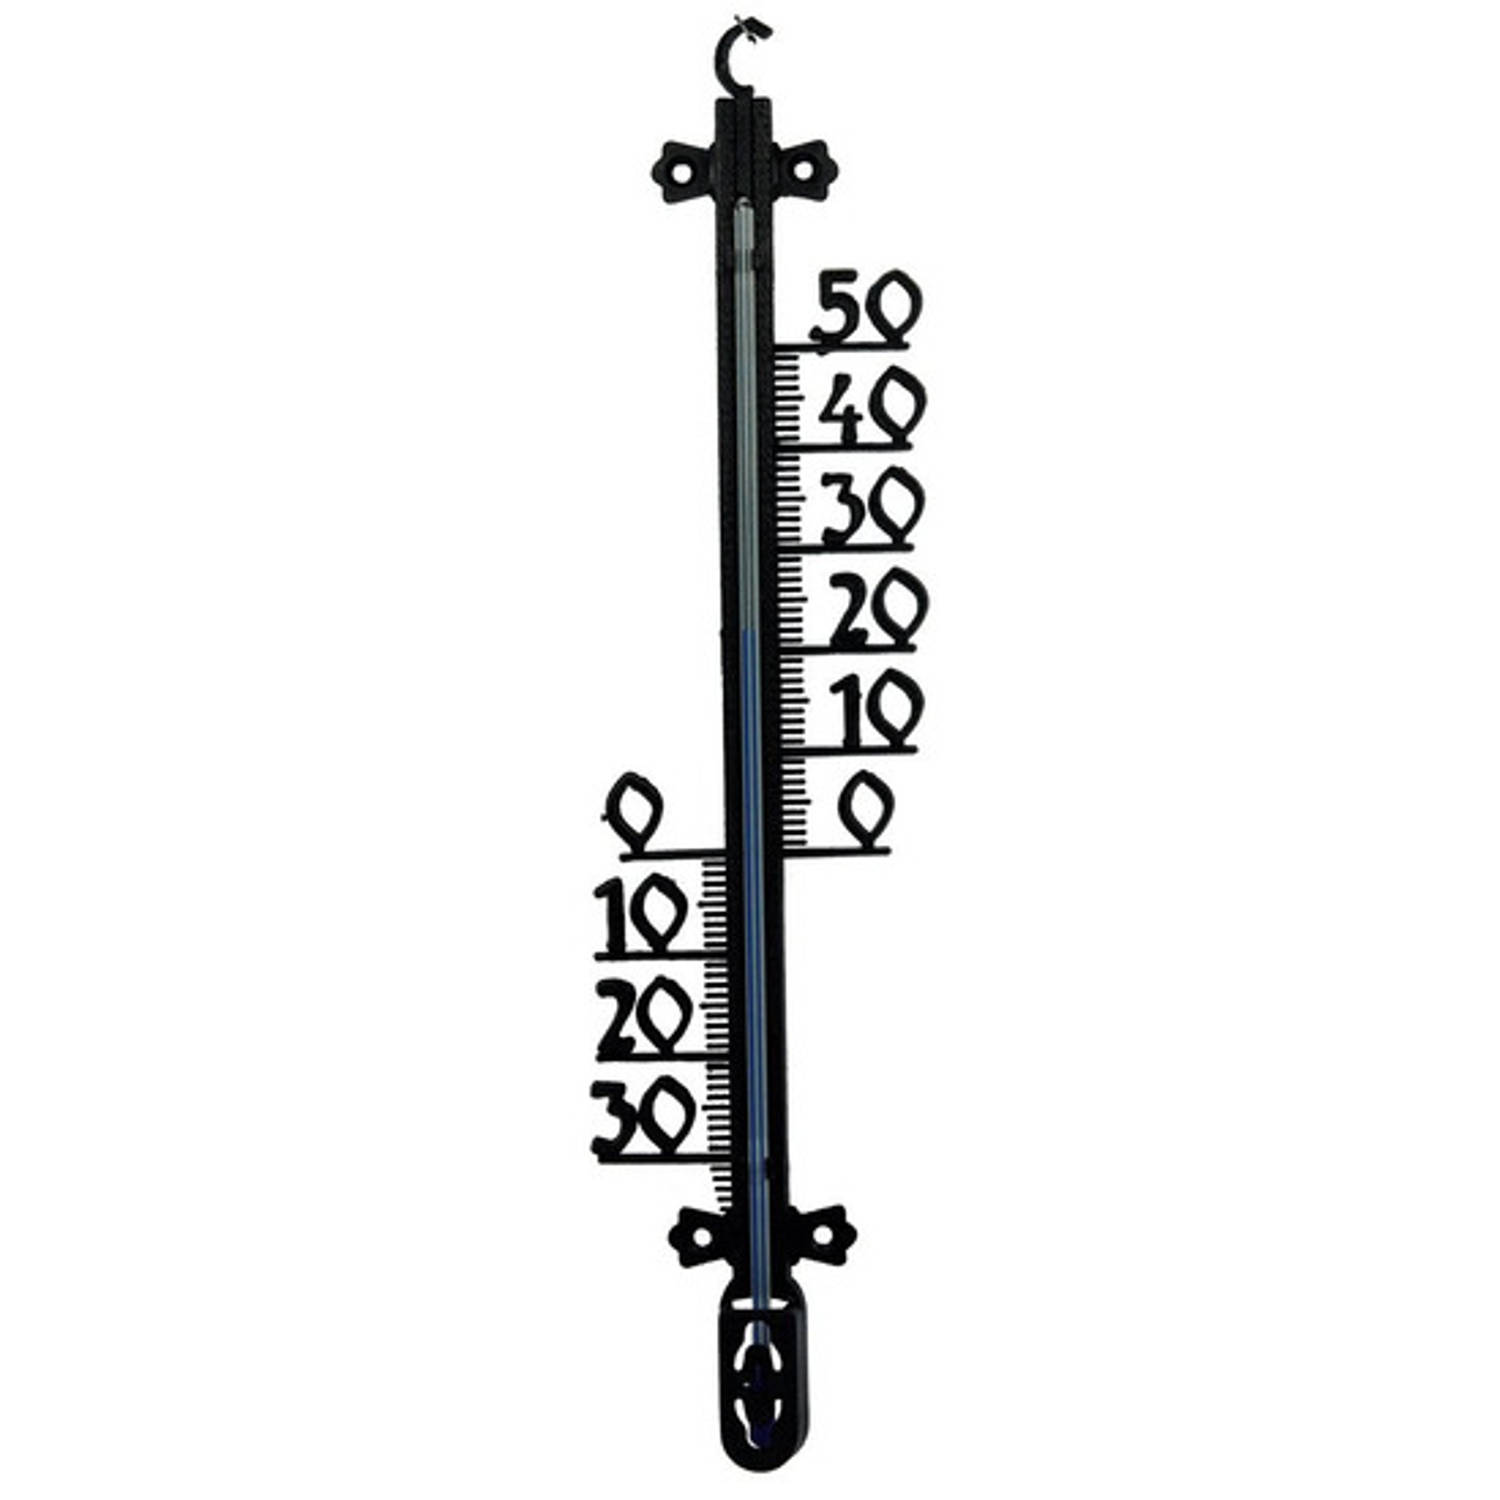 Buitenthermometer voor tuin / buiten 65 x 2 cm - zwart buitenthermometers / temperatuurmeters | Blokker